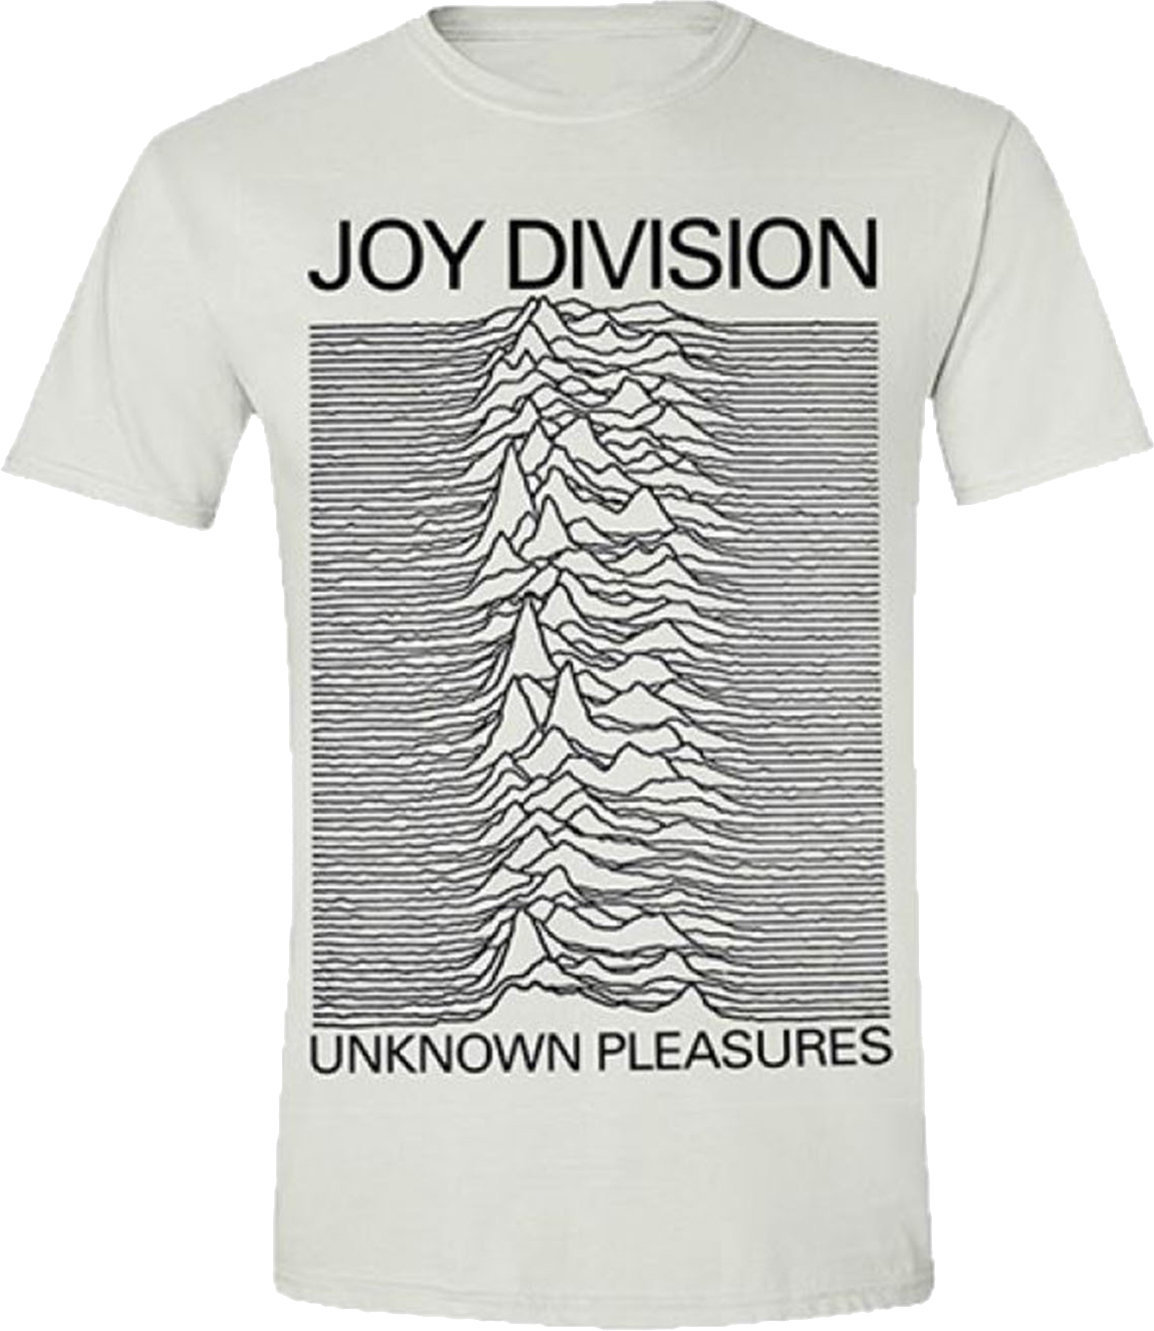 T-Shirt Joy Division T-Shirt Unknown Pleasures White 2XL